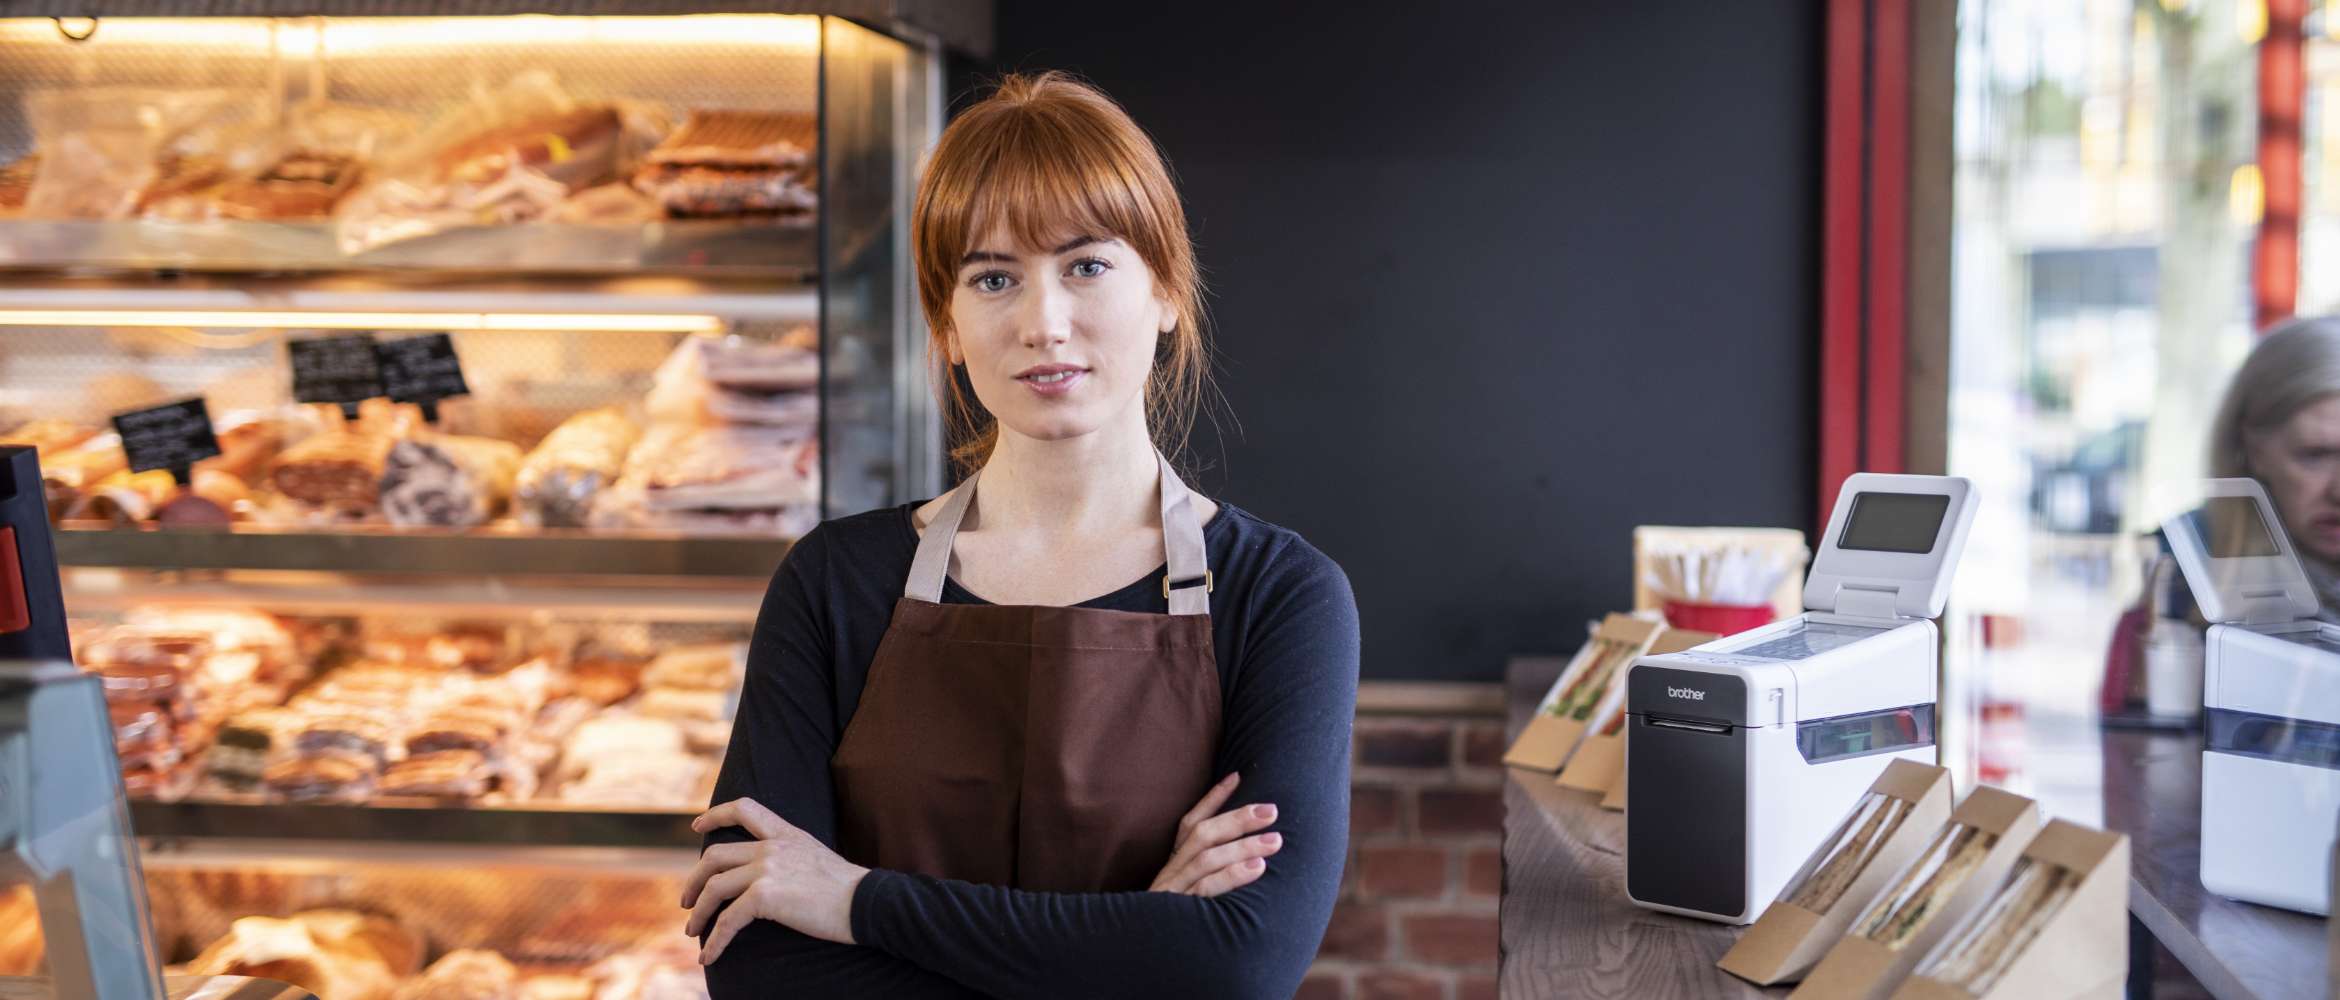 Une employée d'une boulangerie se tient debout, les bras croisés, regardant la caméra.